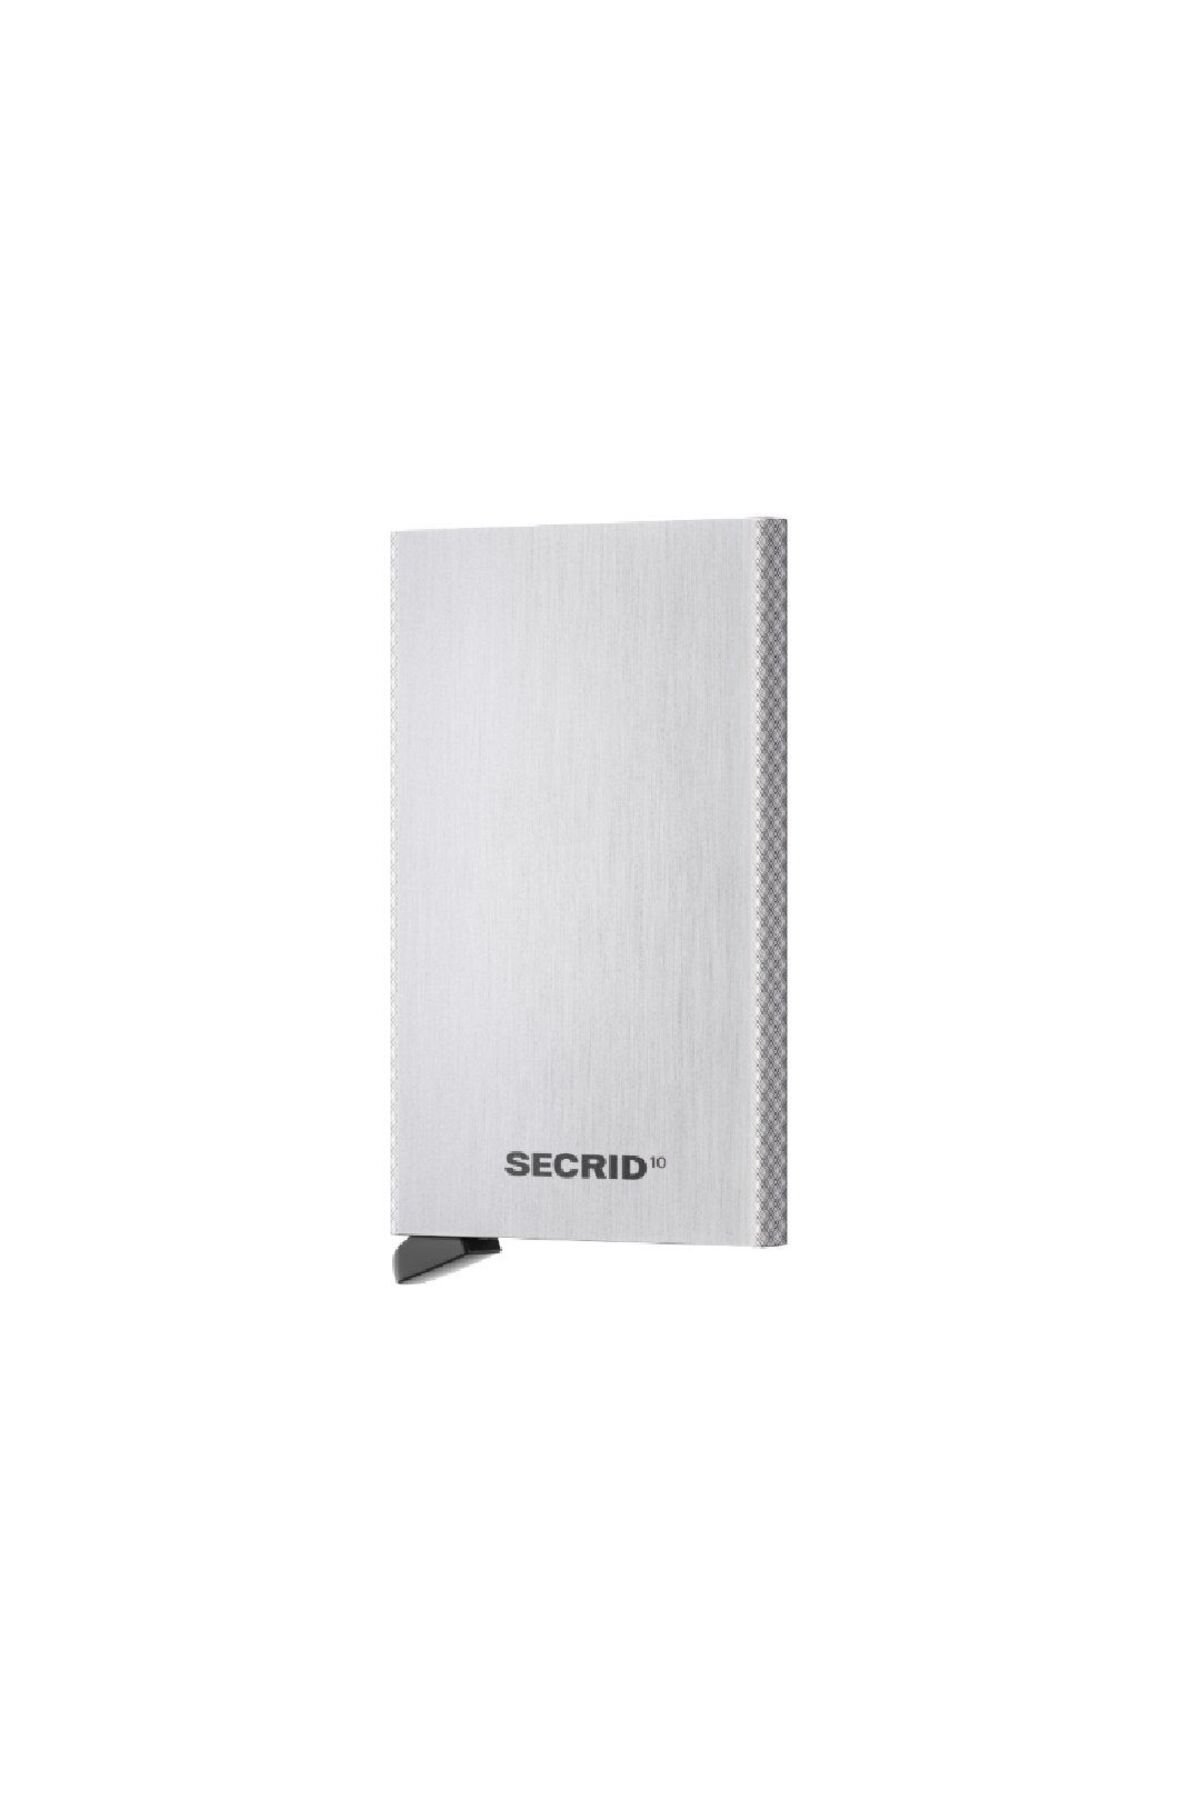 Secrid Card Protector 10 Brushed Silver - Fırçalanmış Gümüş %100 Orjinal Özel Cardprotector Alüminyum Kartlık